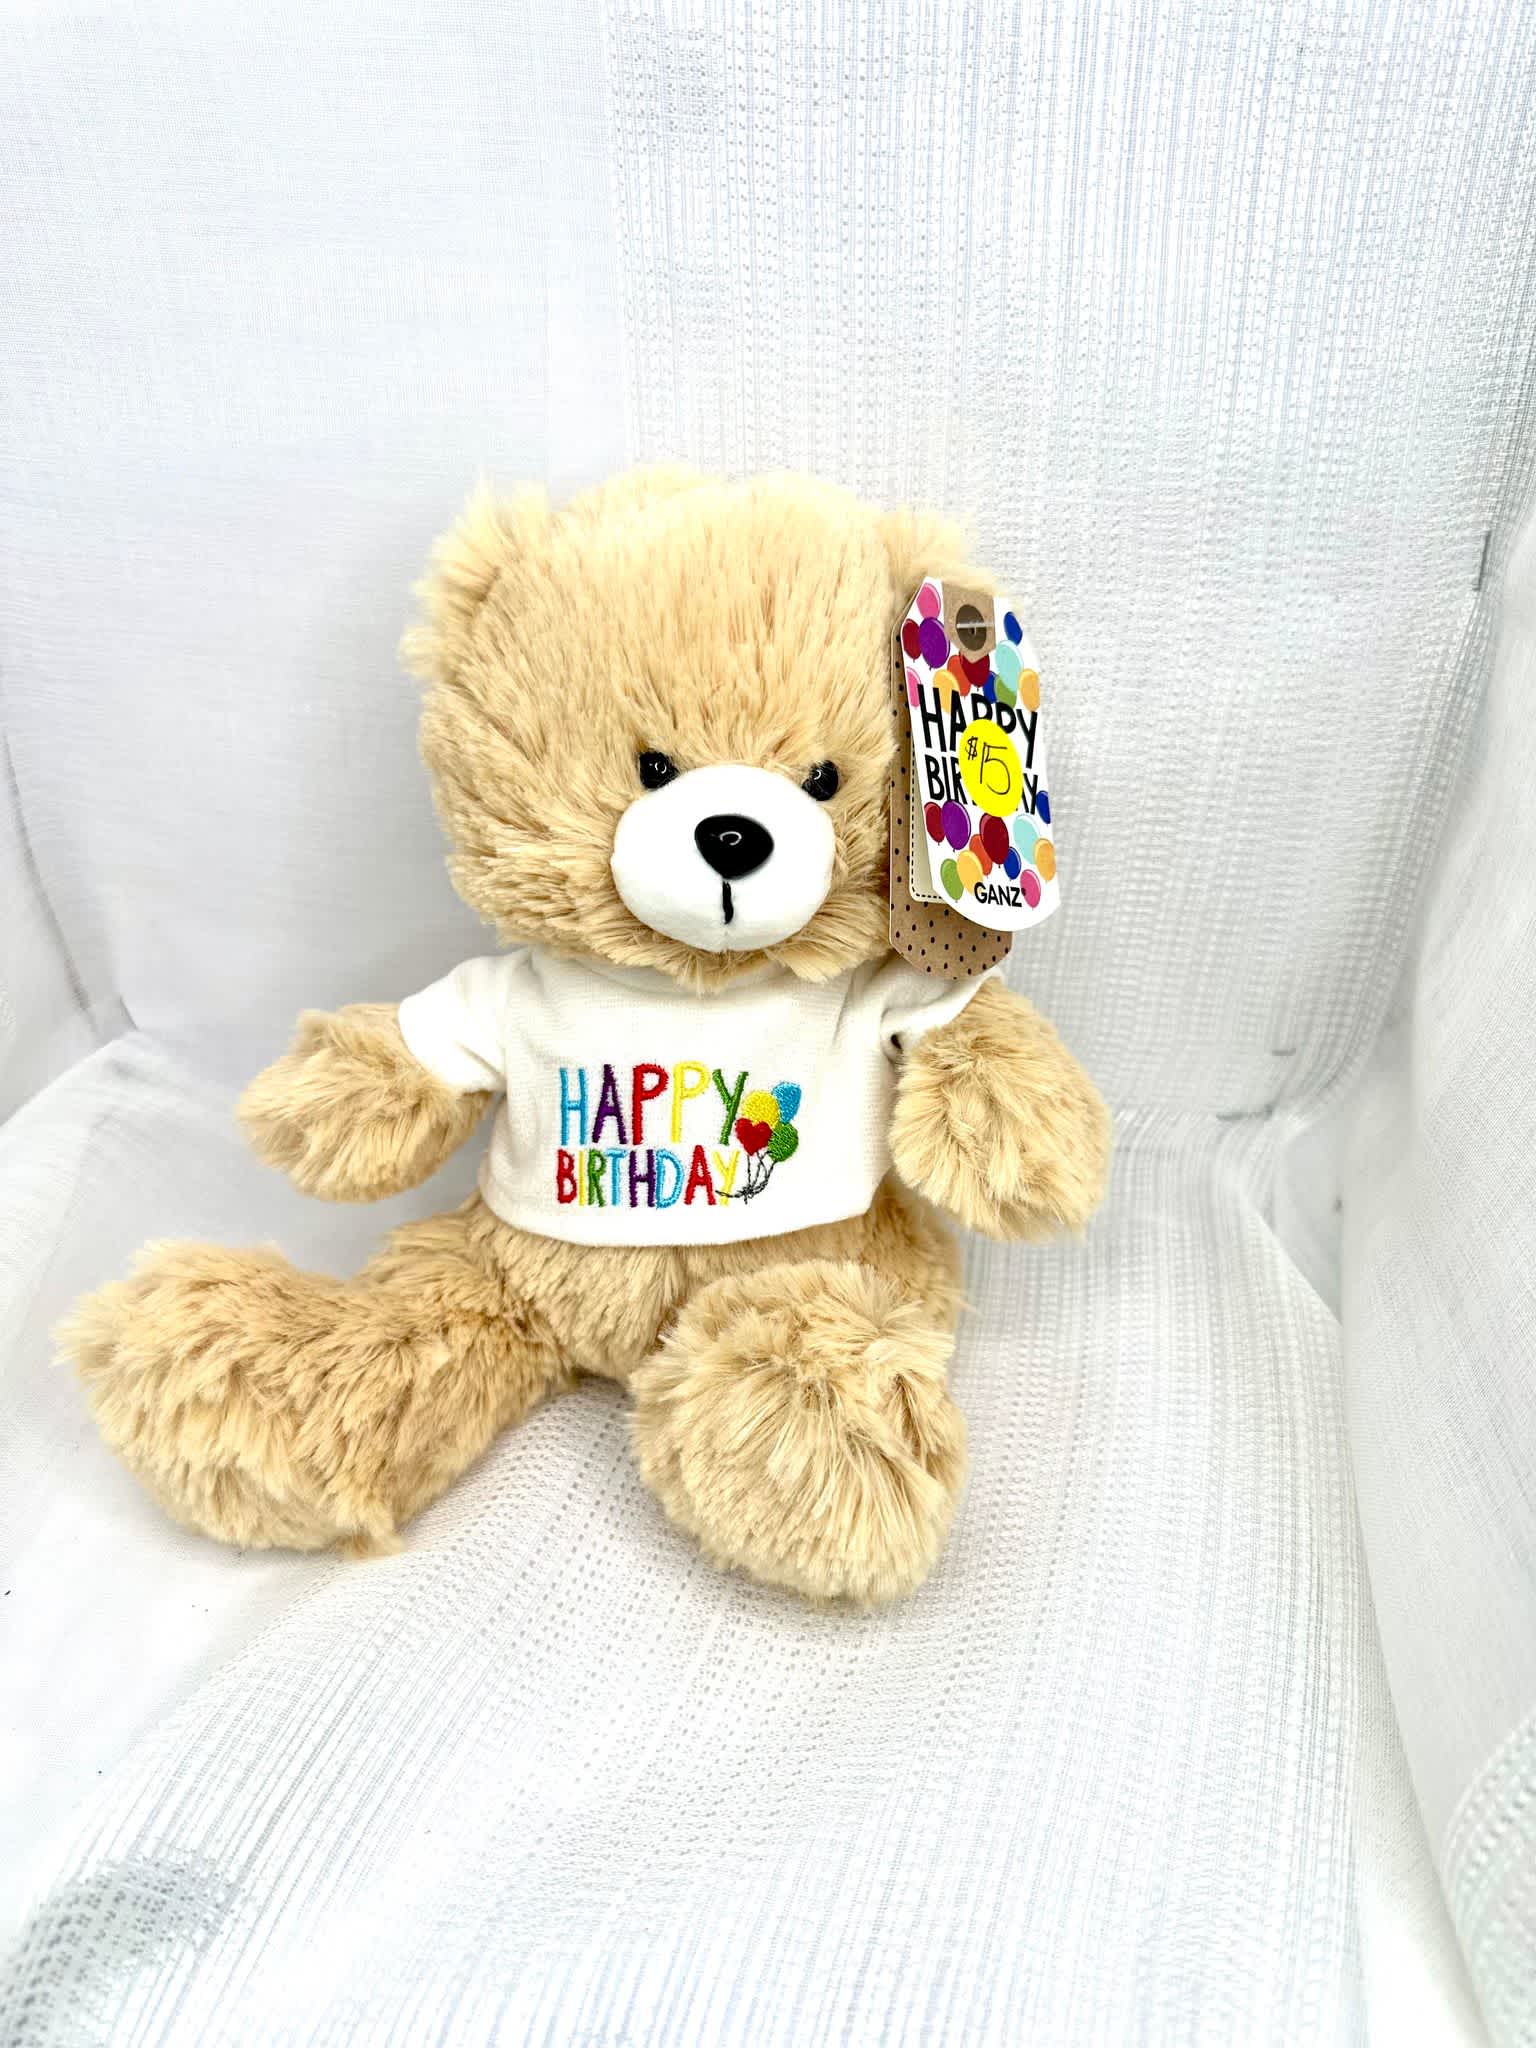 Ganz- Birthday Teddy - A 9 inch brown teddy bear wishing you the happiest birthday! 